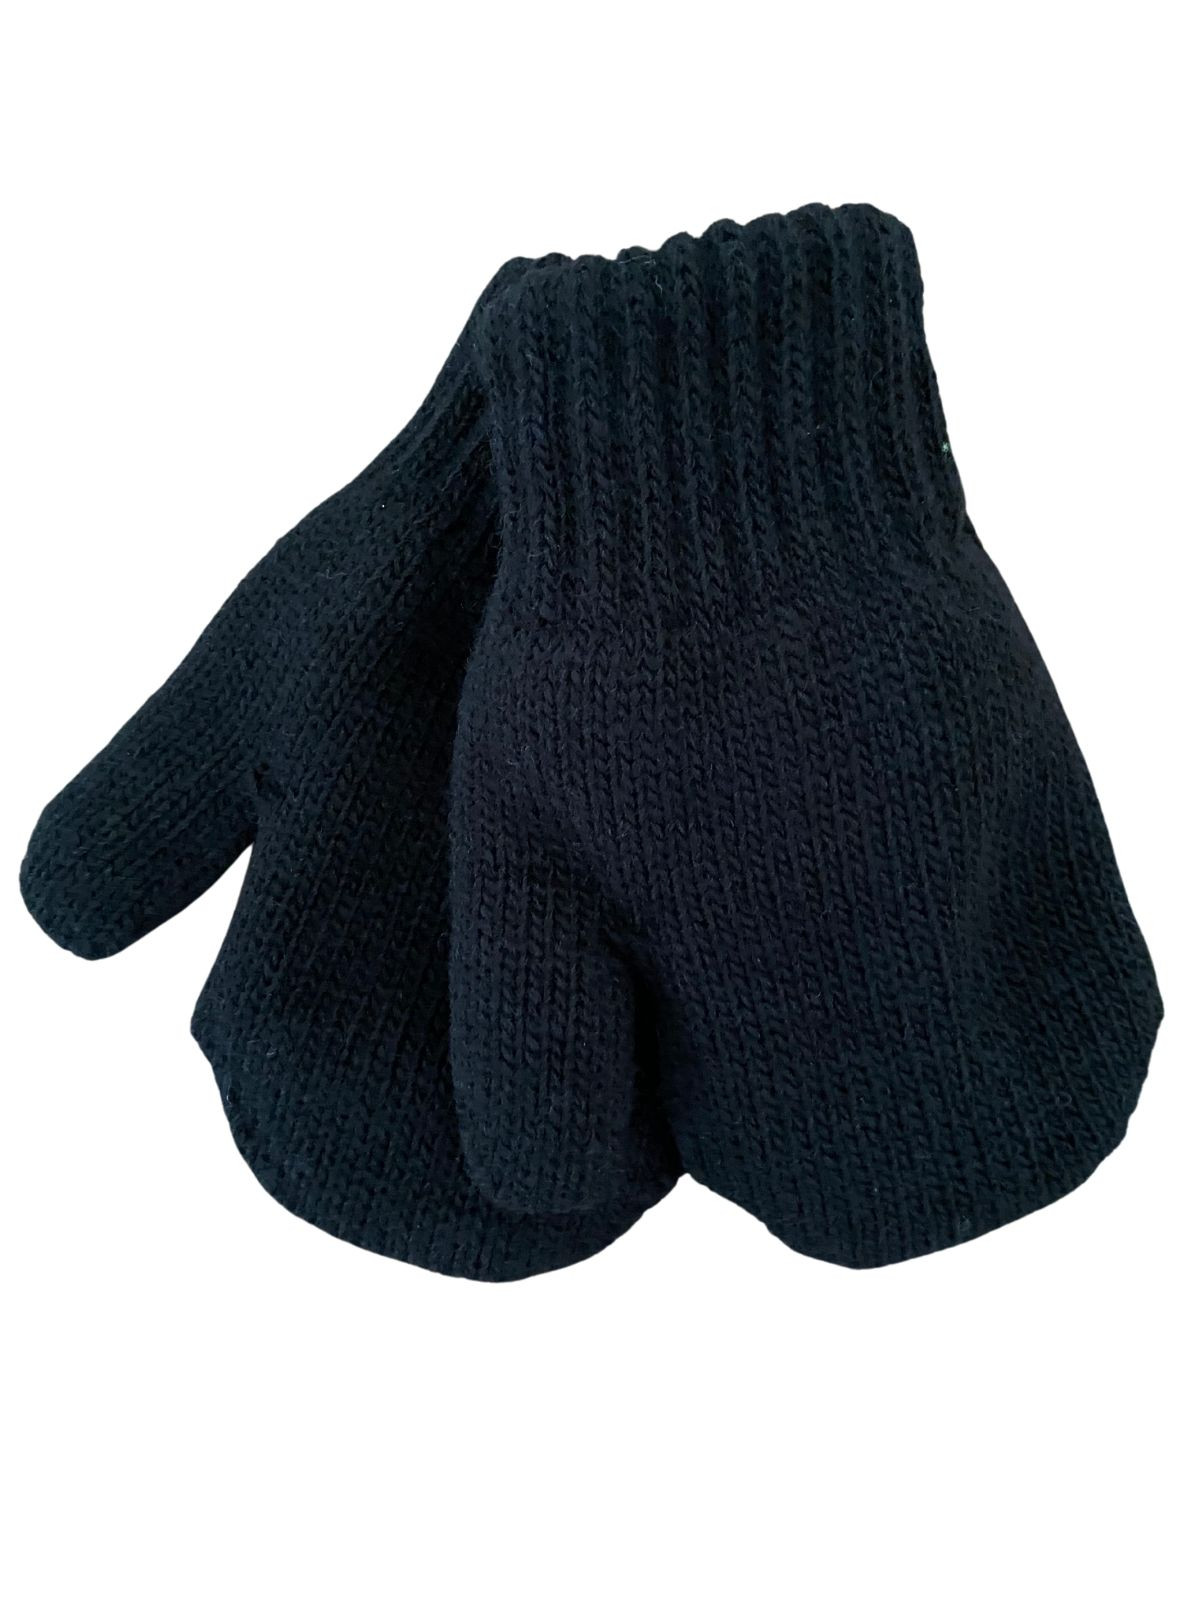 Mitaines tricotés pour enfant 3-5 ans, Basic35_noir